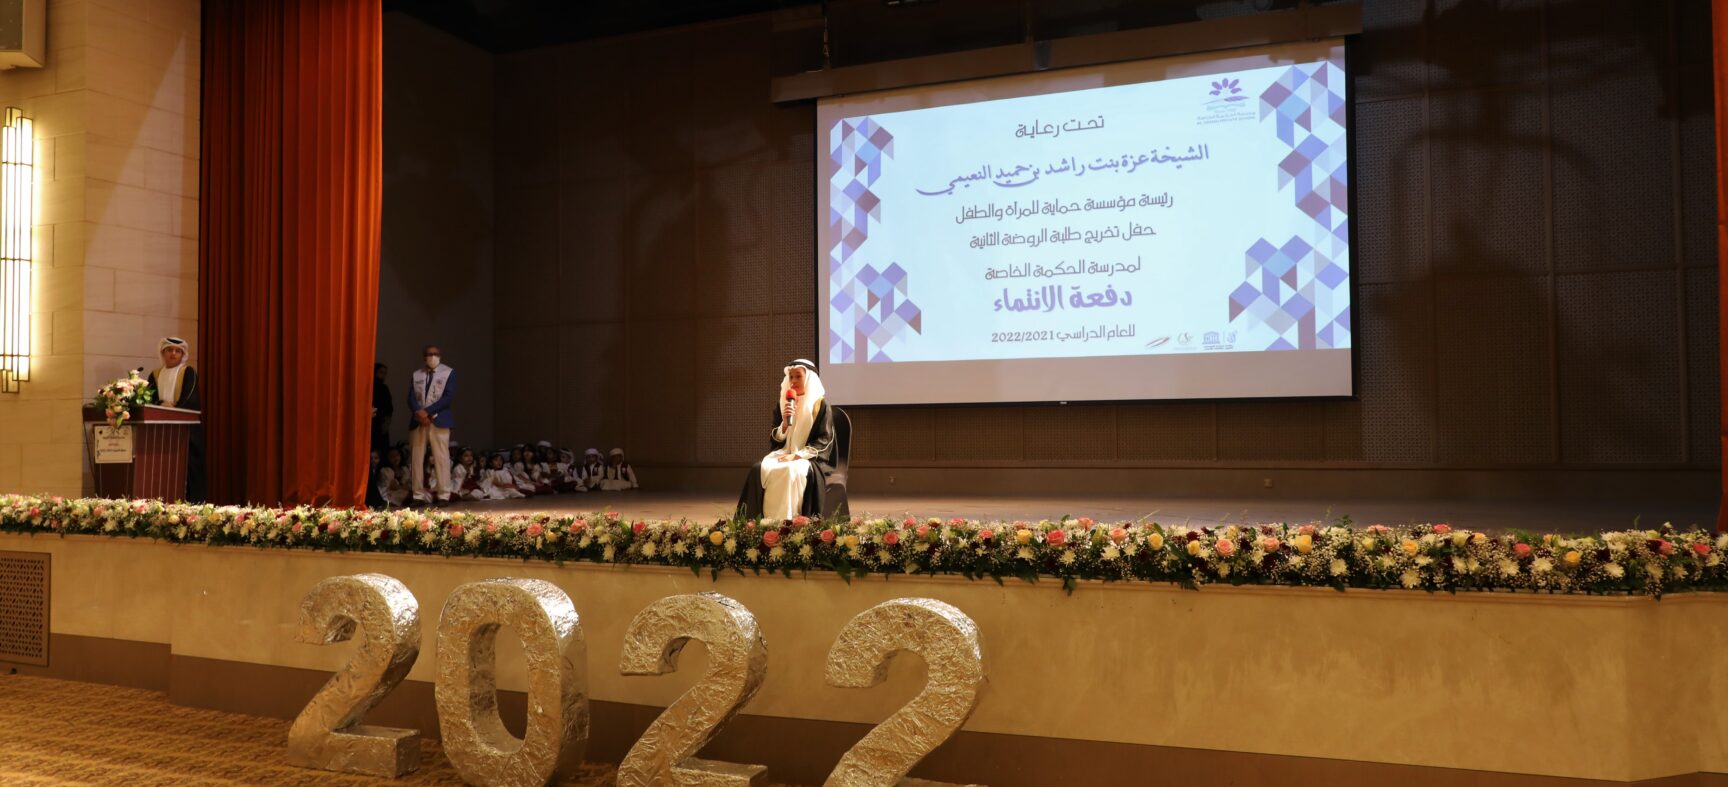 الشيخة عزة بنت راشد النعيمي ترعى حفل تخريج مدرسة الحكمة